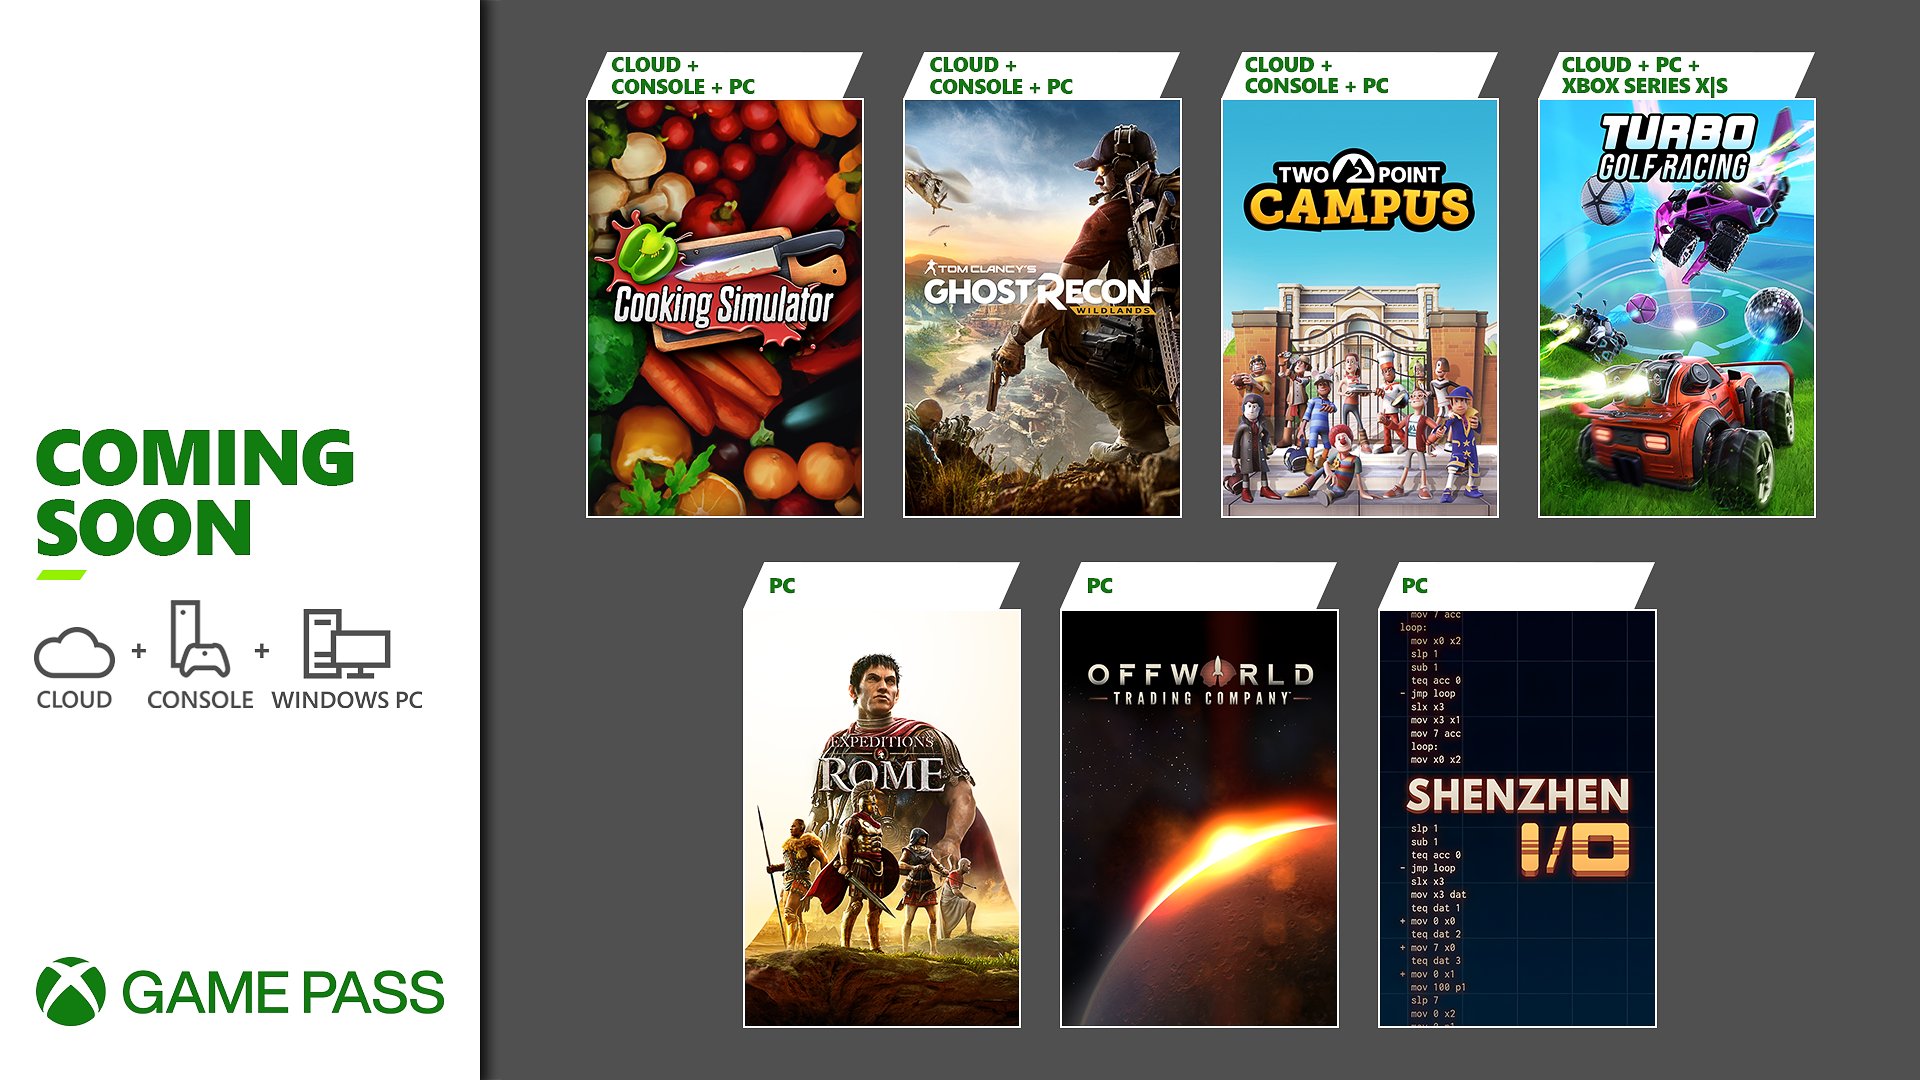 Desvelados los nuevos juegos para Xbox Game Pass del mes de agosto - Los nuevos juegos para Xbox Game Pass ya están anunciados. Aquí tenéis el nuevo listado para agosto.